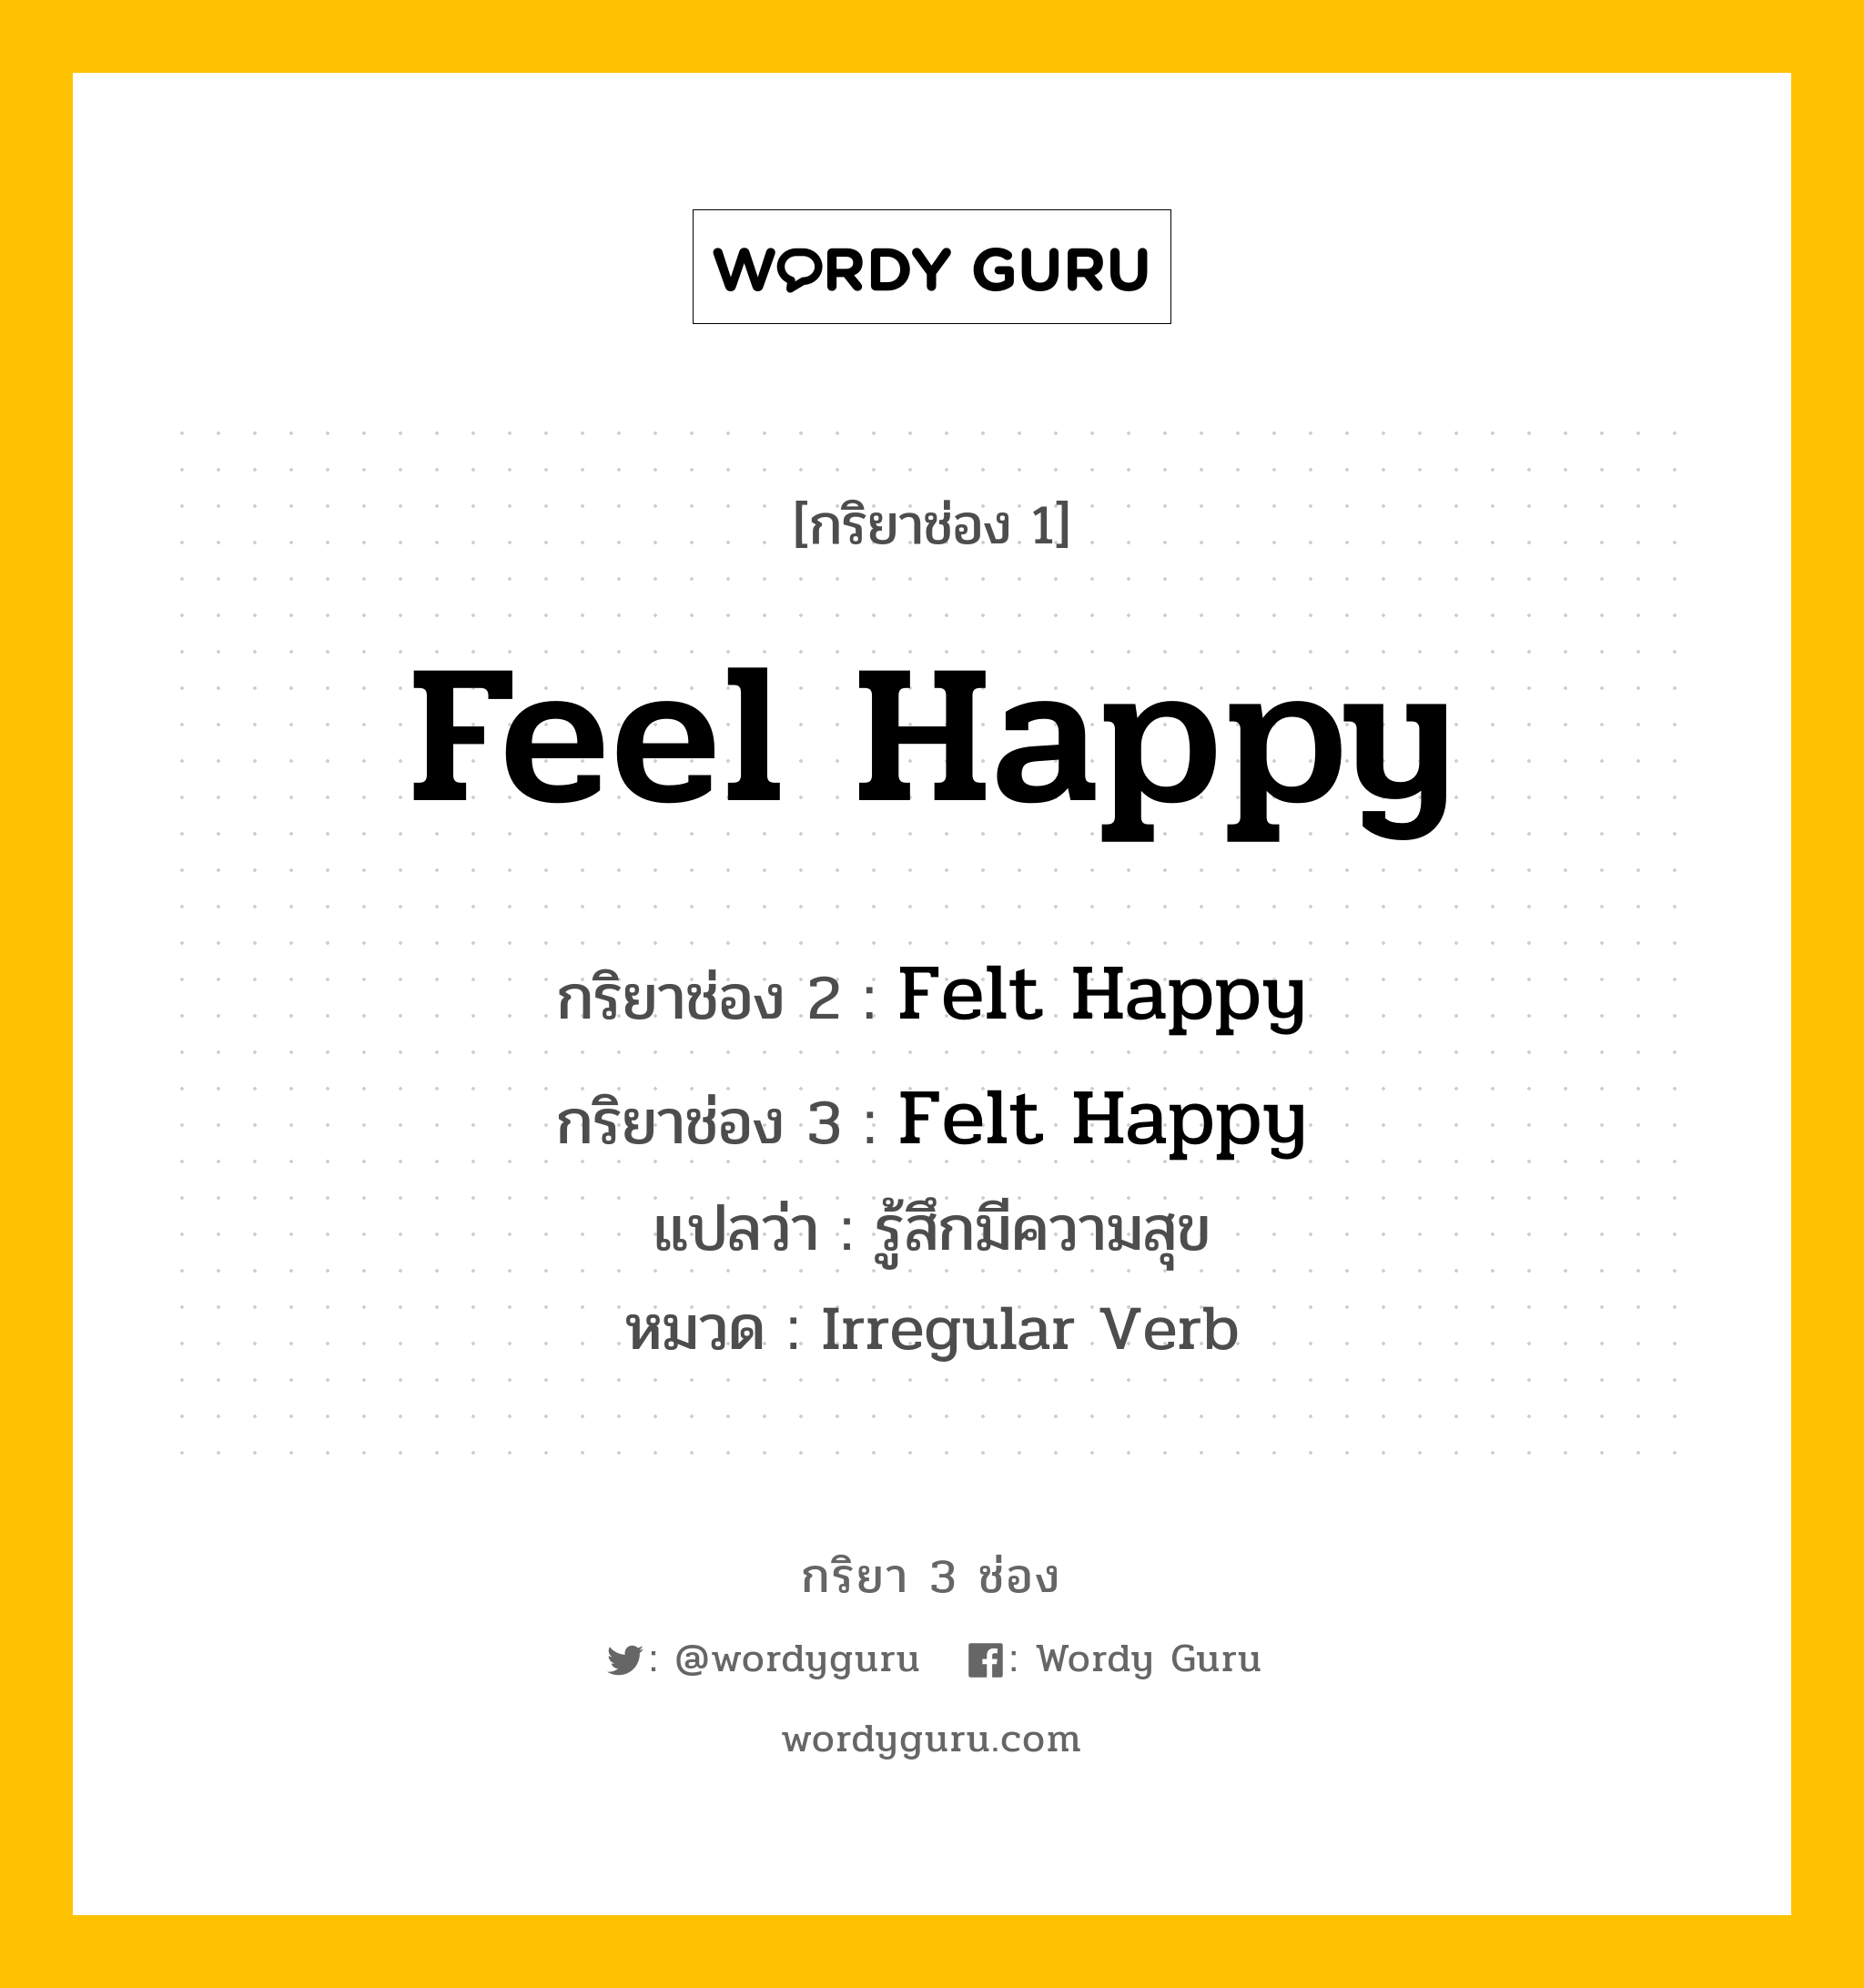 กริยา 3 ช่อง: Feel Happy ช่อง 2 Feel Happy ช่อง 3 คืออะไร, กริยาช่อง 1 Feel Happy กริยาช่อง 2 Felt Happy กริยาช่อง 3 Felt Happy แปลว่า รู้สึกมีความสุข หมวด Irregular Verb หมวด Irregular Verb